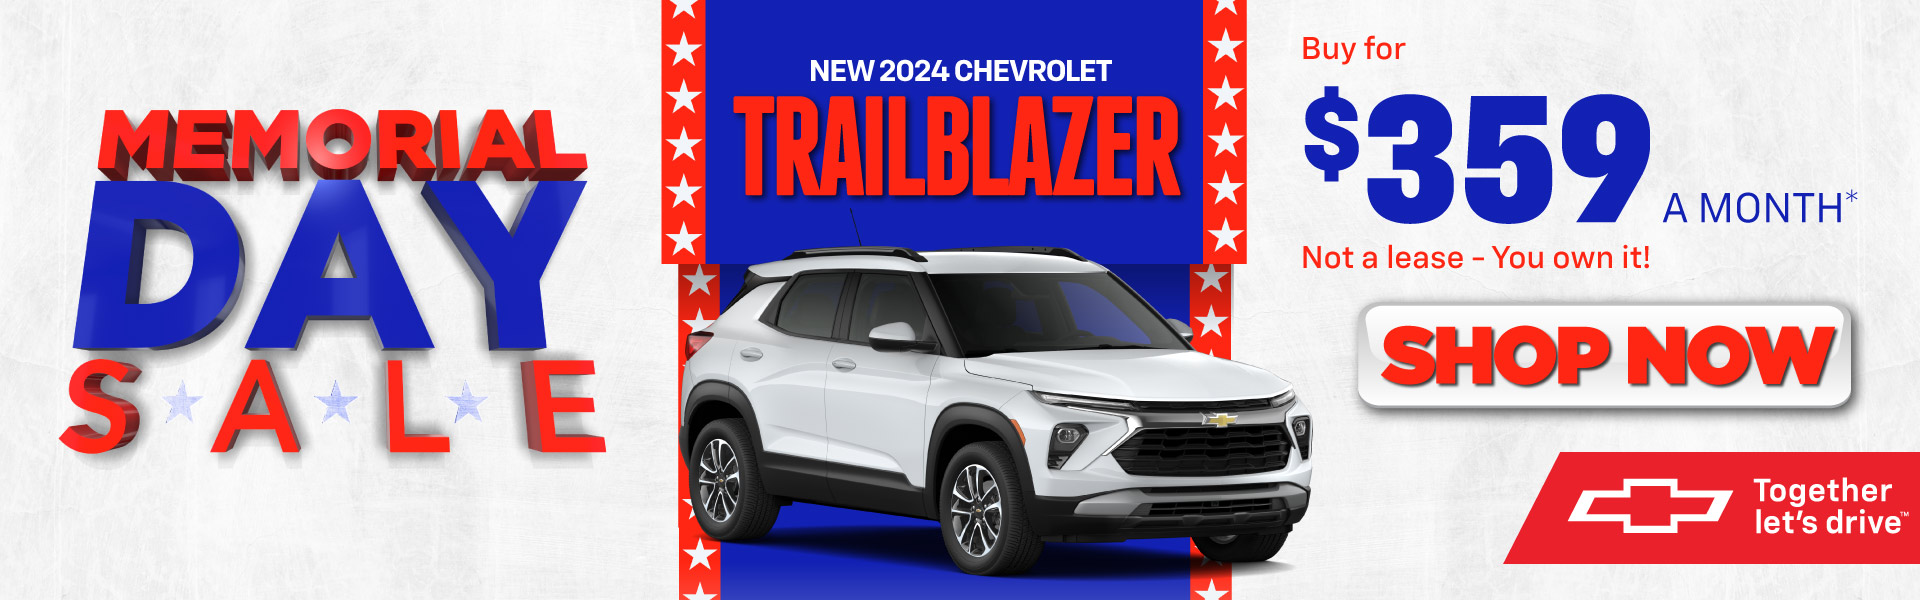 2024 Chevrolet Trailblazer - $359/mo* - Shop Now